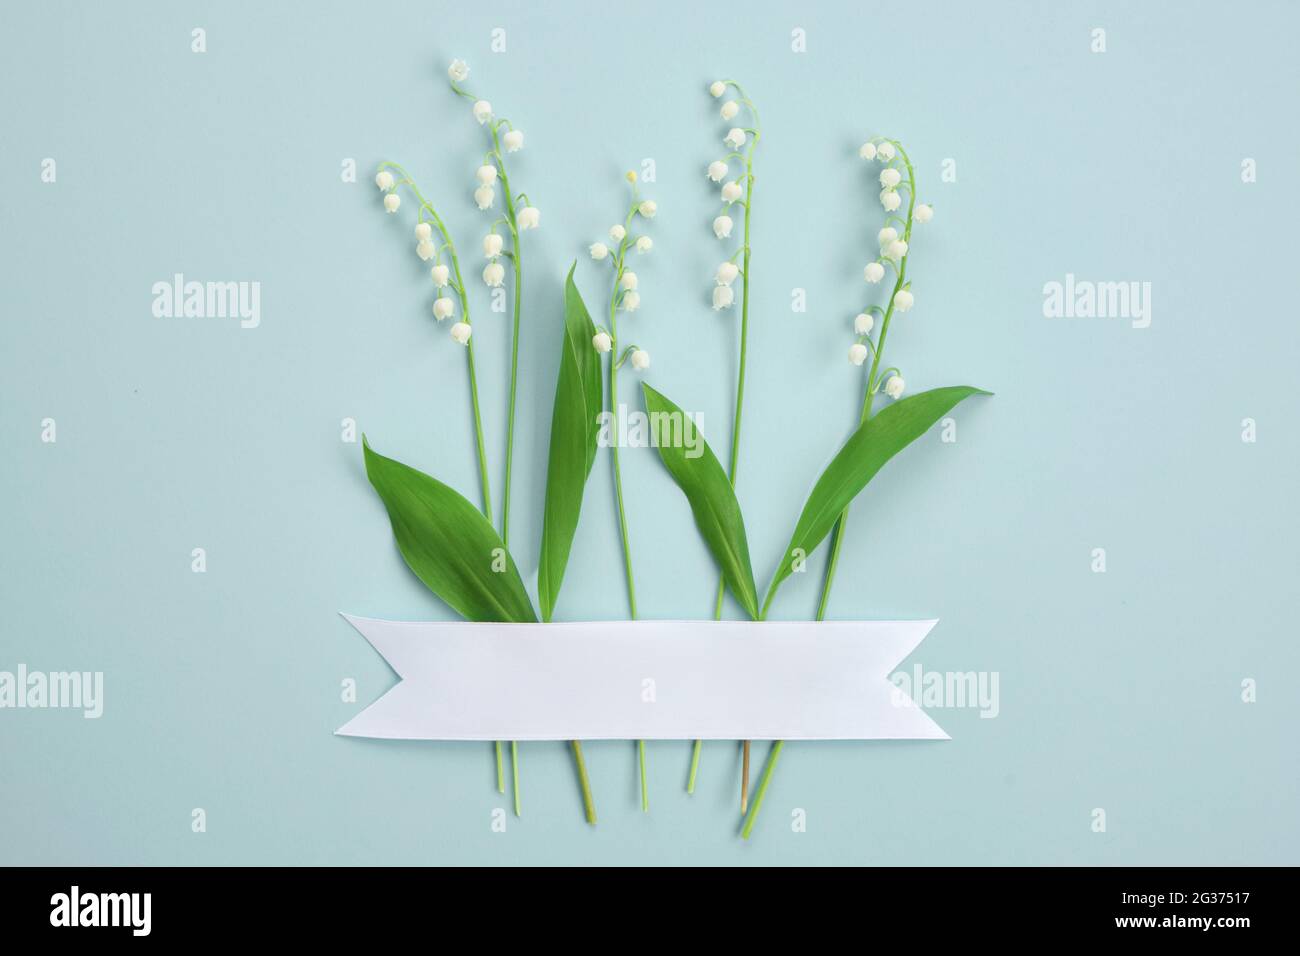 Composición con flores blancas. Diseño creativo de lirios del valle sobre un fondo verde claro. Concepto de minimalismo. Foto de stock